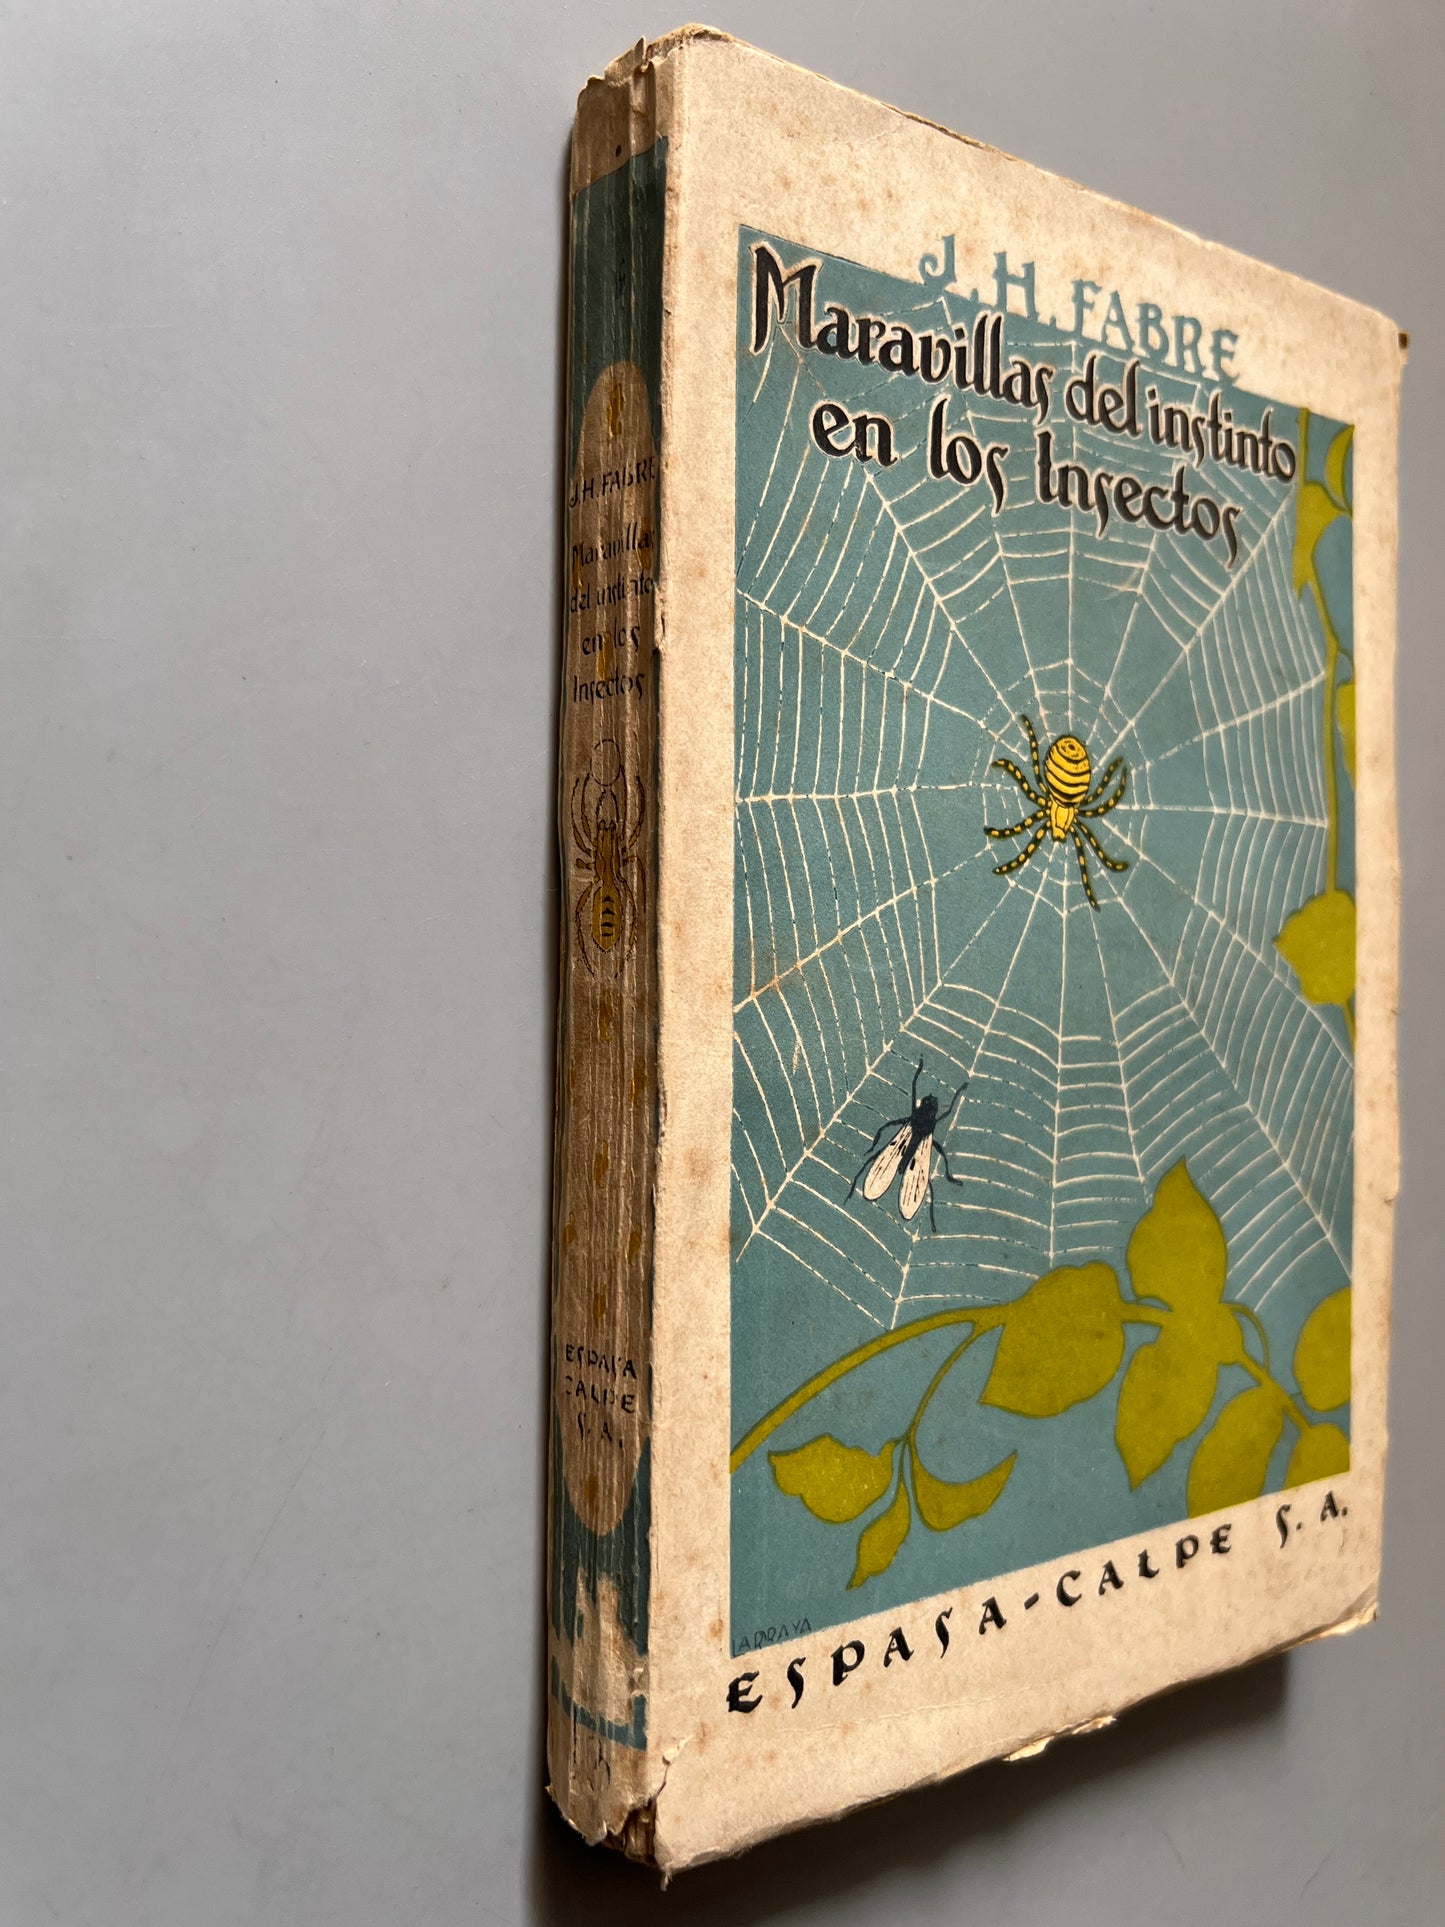 Maravillas del instinto en los insectos, J. H. Fabre - Espasa-Calpe, 1944